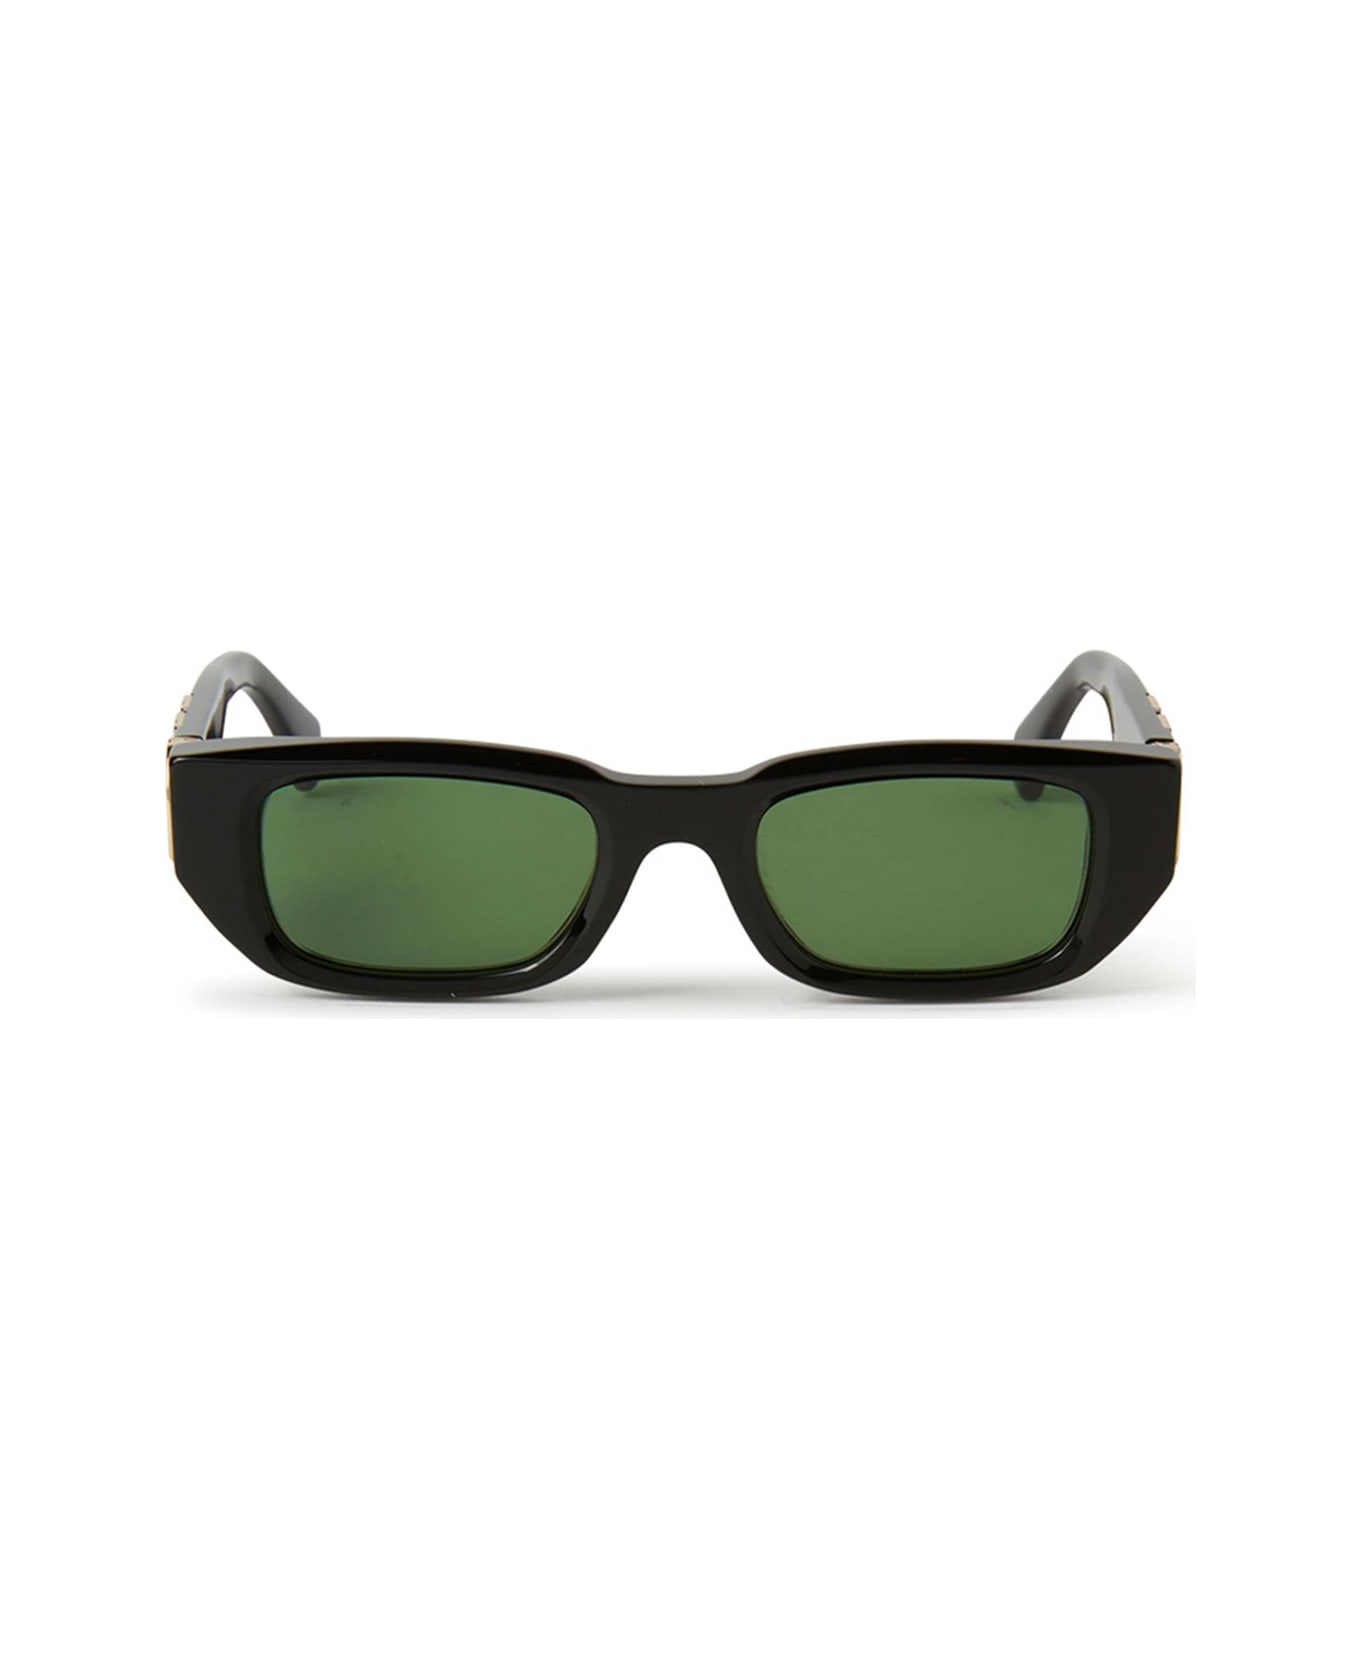 Off-White Oeri124 Fillmore 1055 Black Green Sunglasses - Nero サングラス